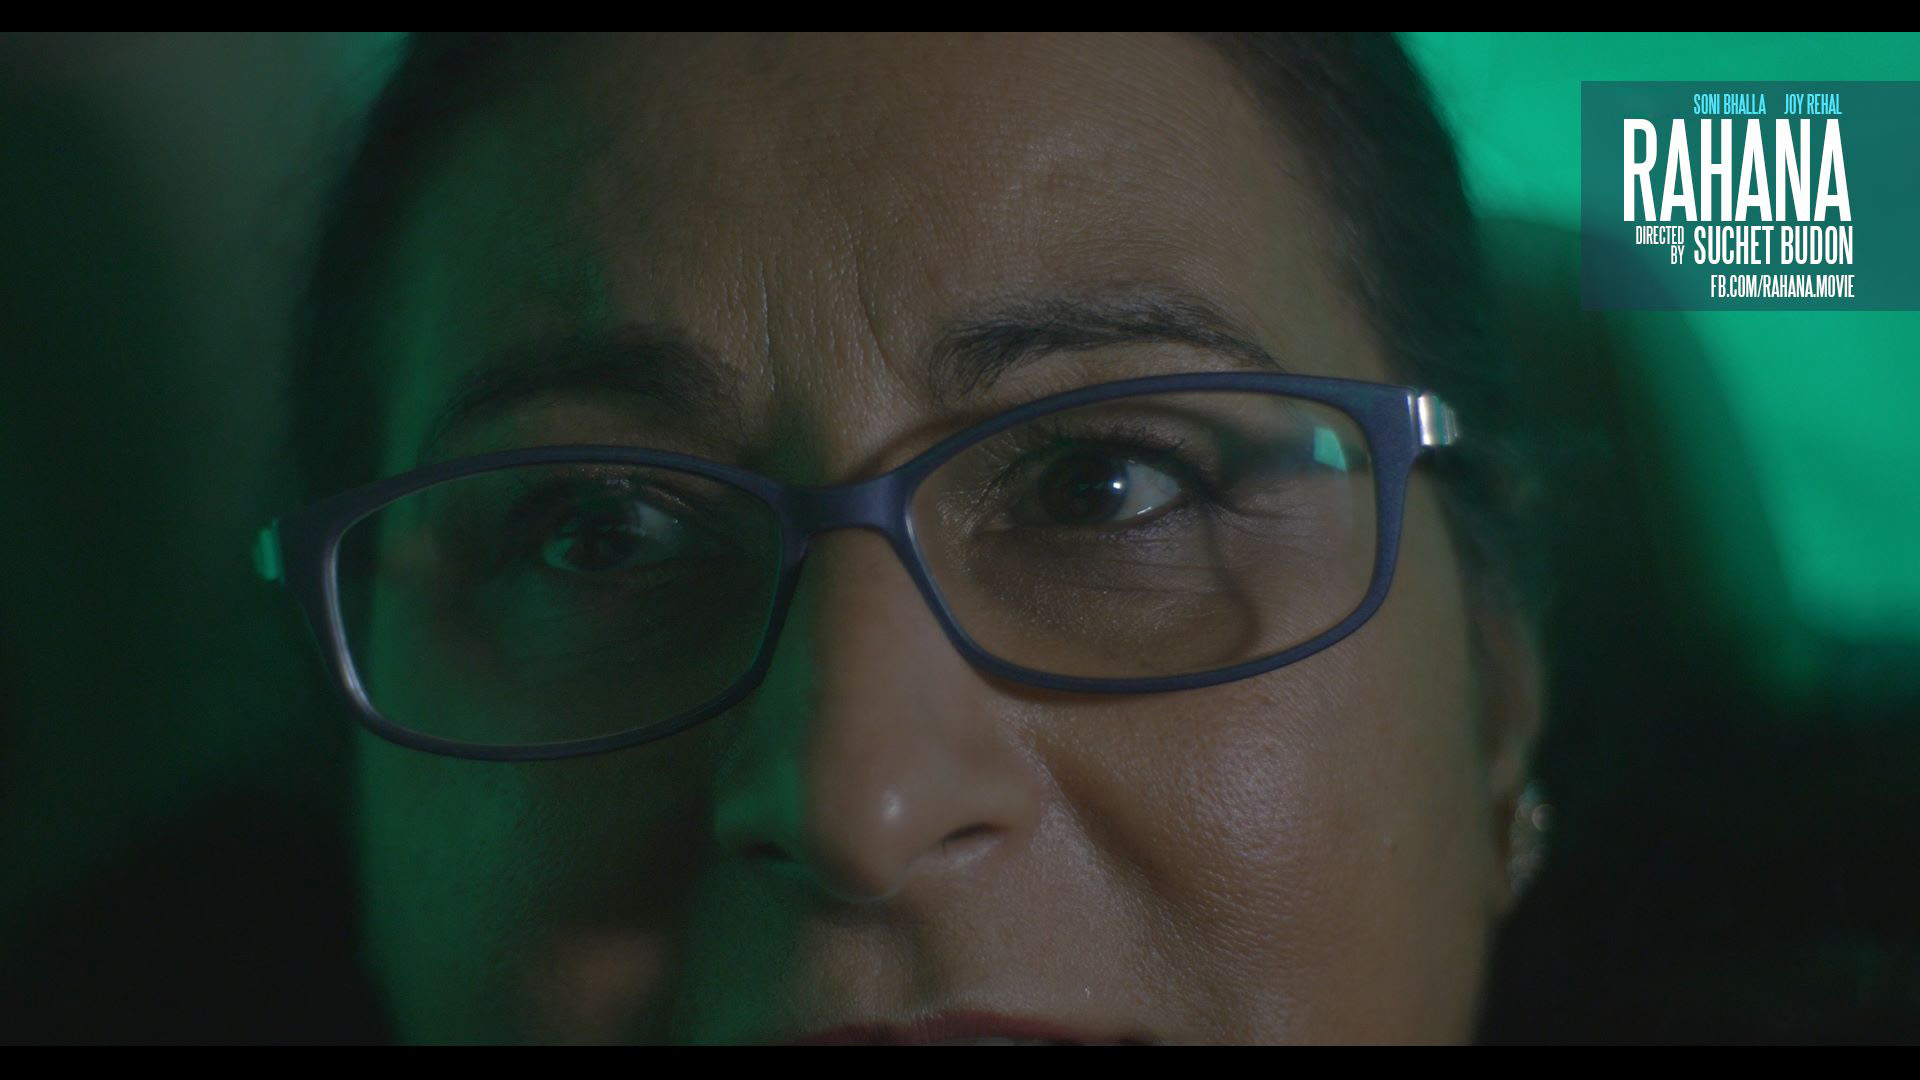 Joy Rehal is Reshma Kaur Jootla in RAHANA Directed by Suchet Budon